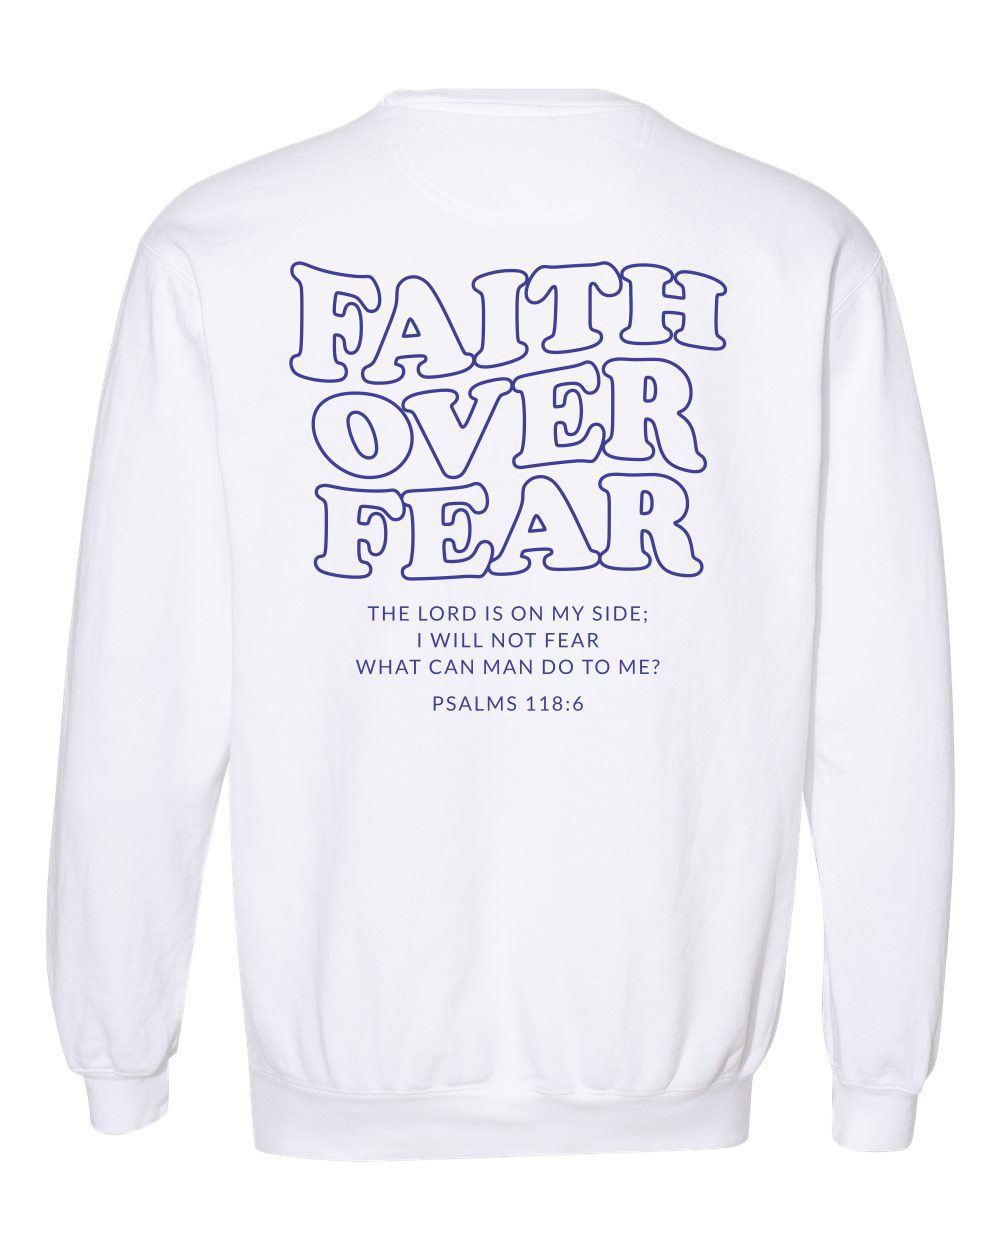 Faith Over Fear Comfort Color Sweatshirt